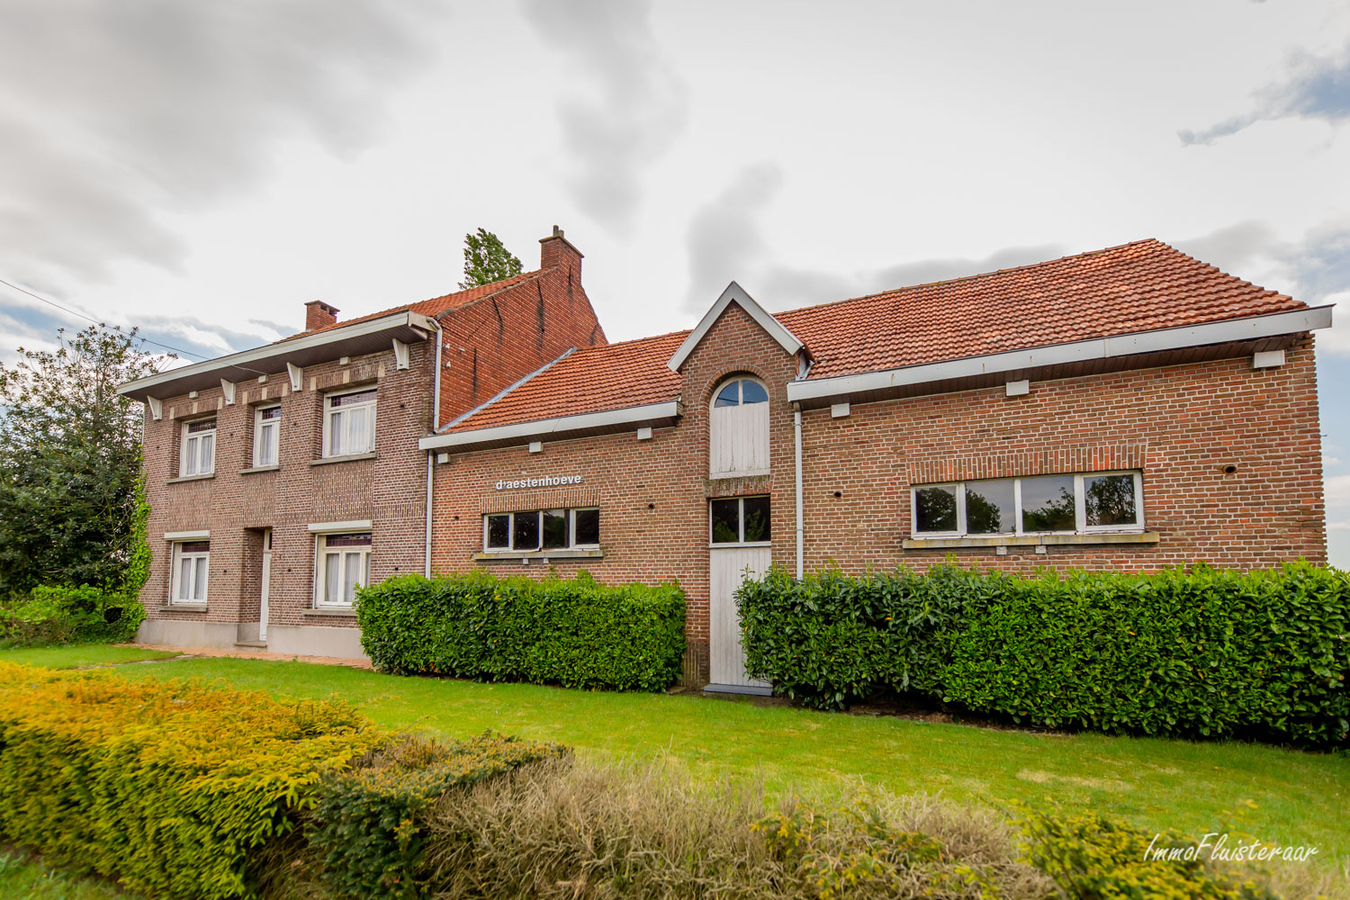 Property for sale in Vlimmeren